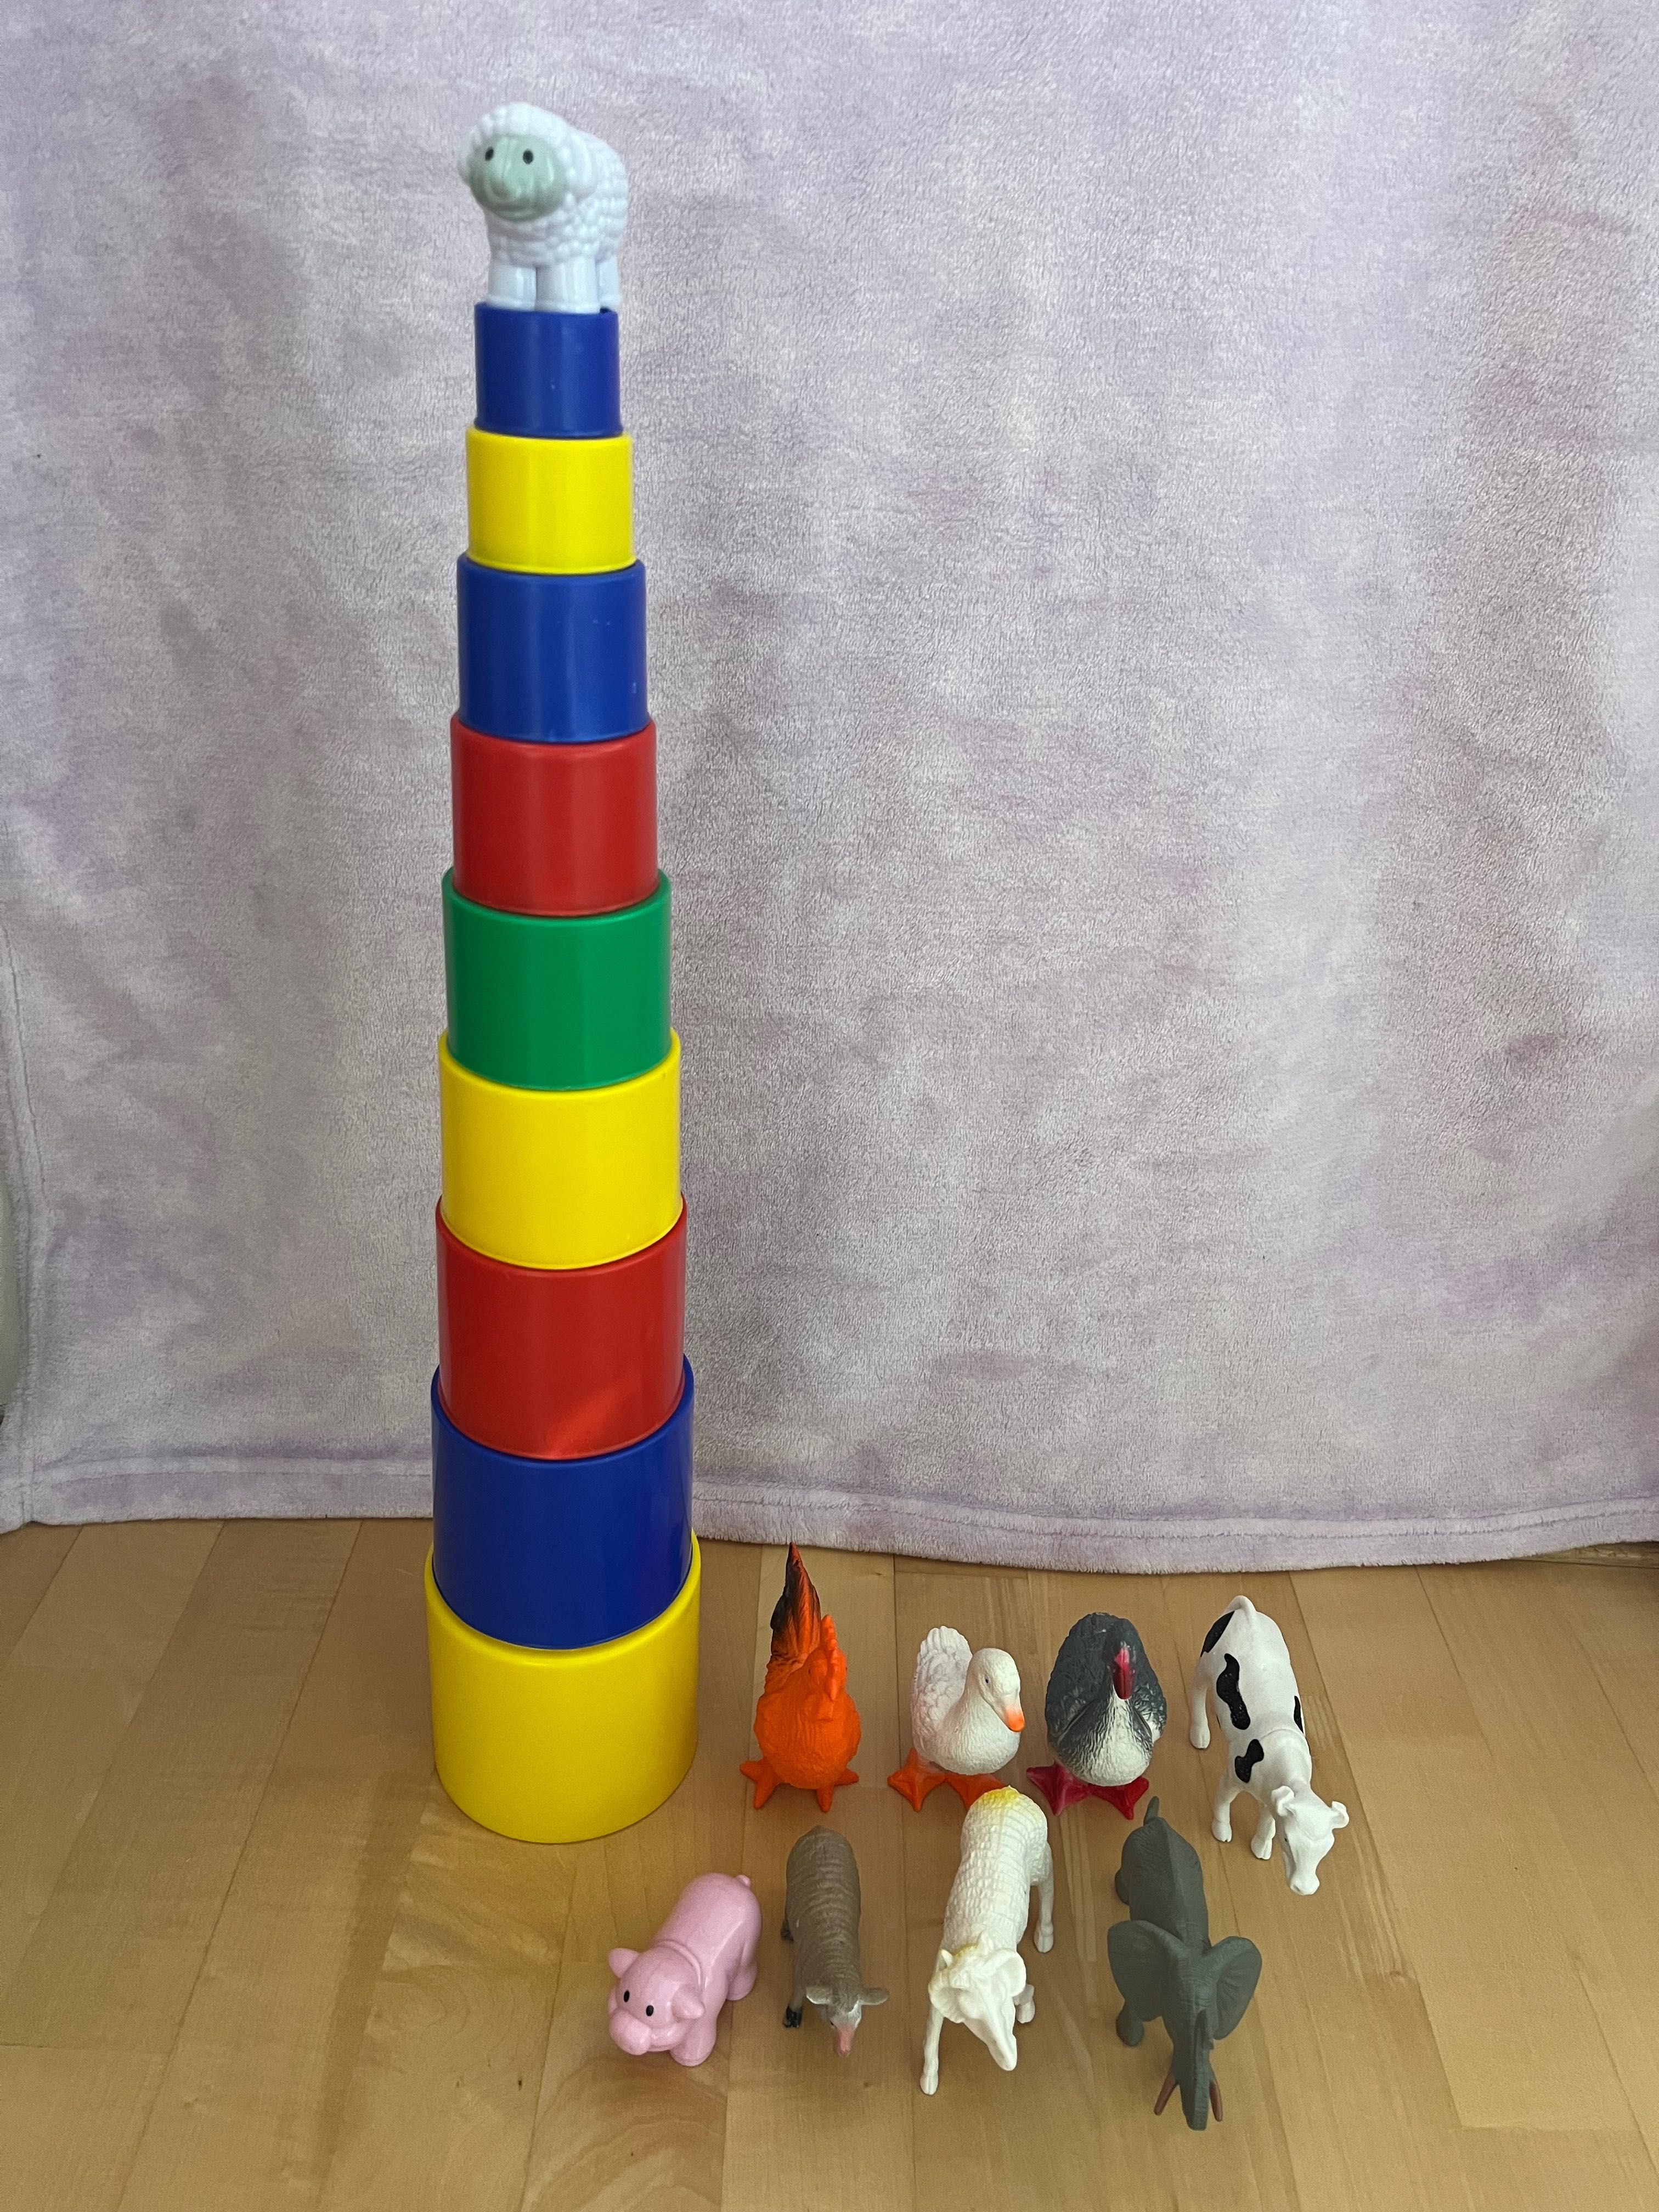 Wieża z kubków duża 51 cm, zwierzęta figurki zabawki